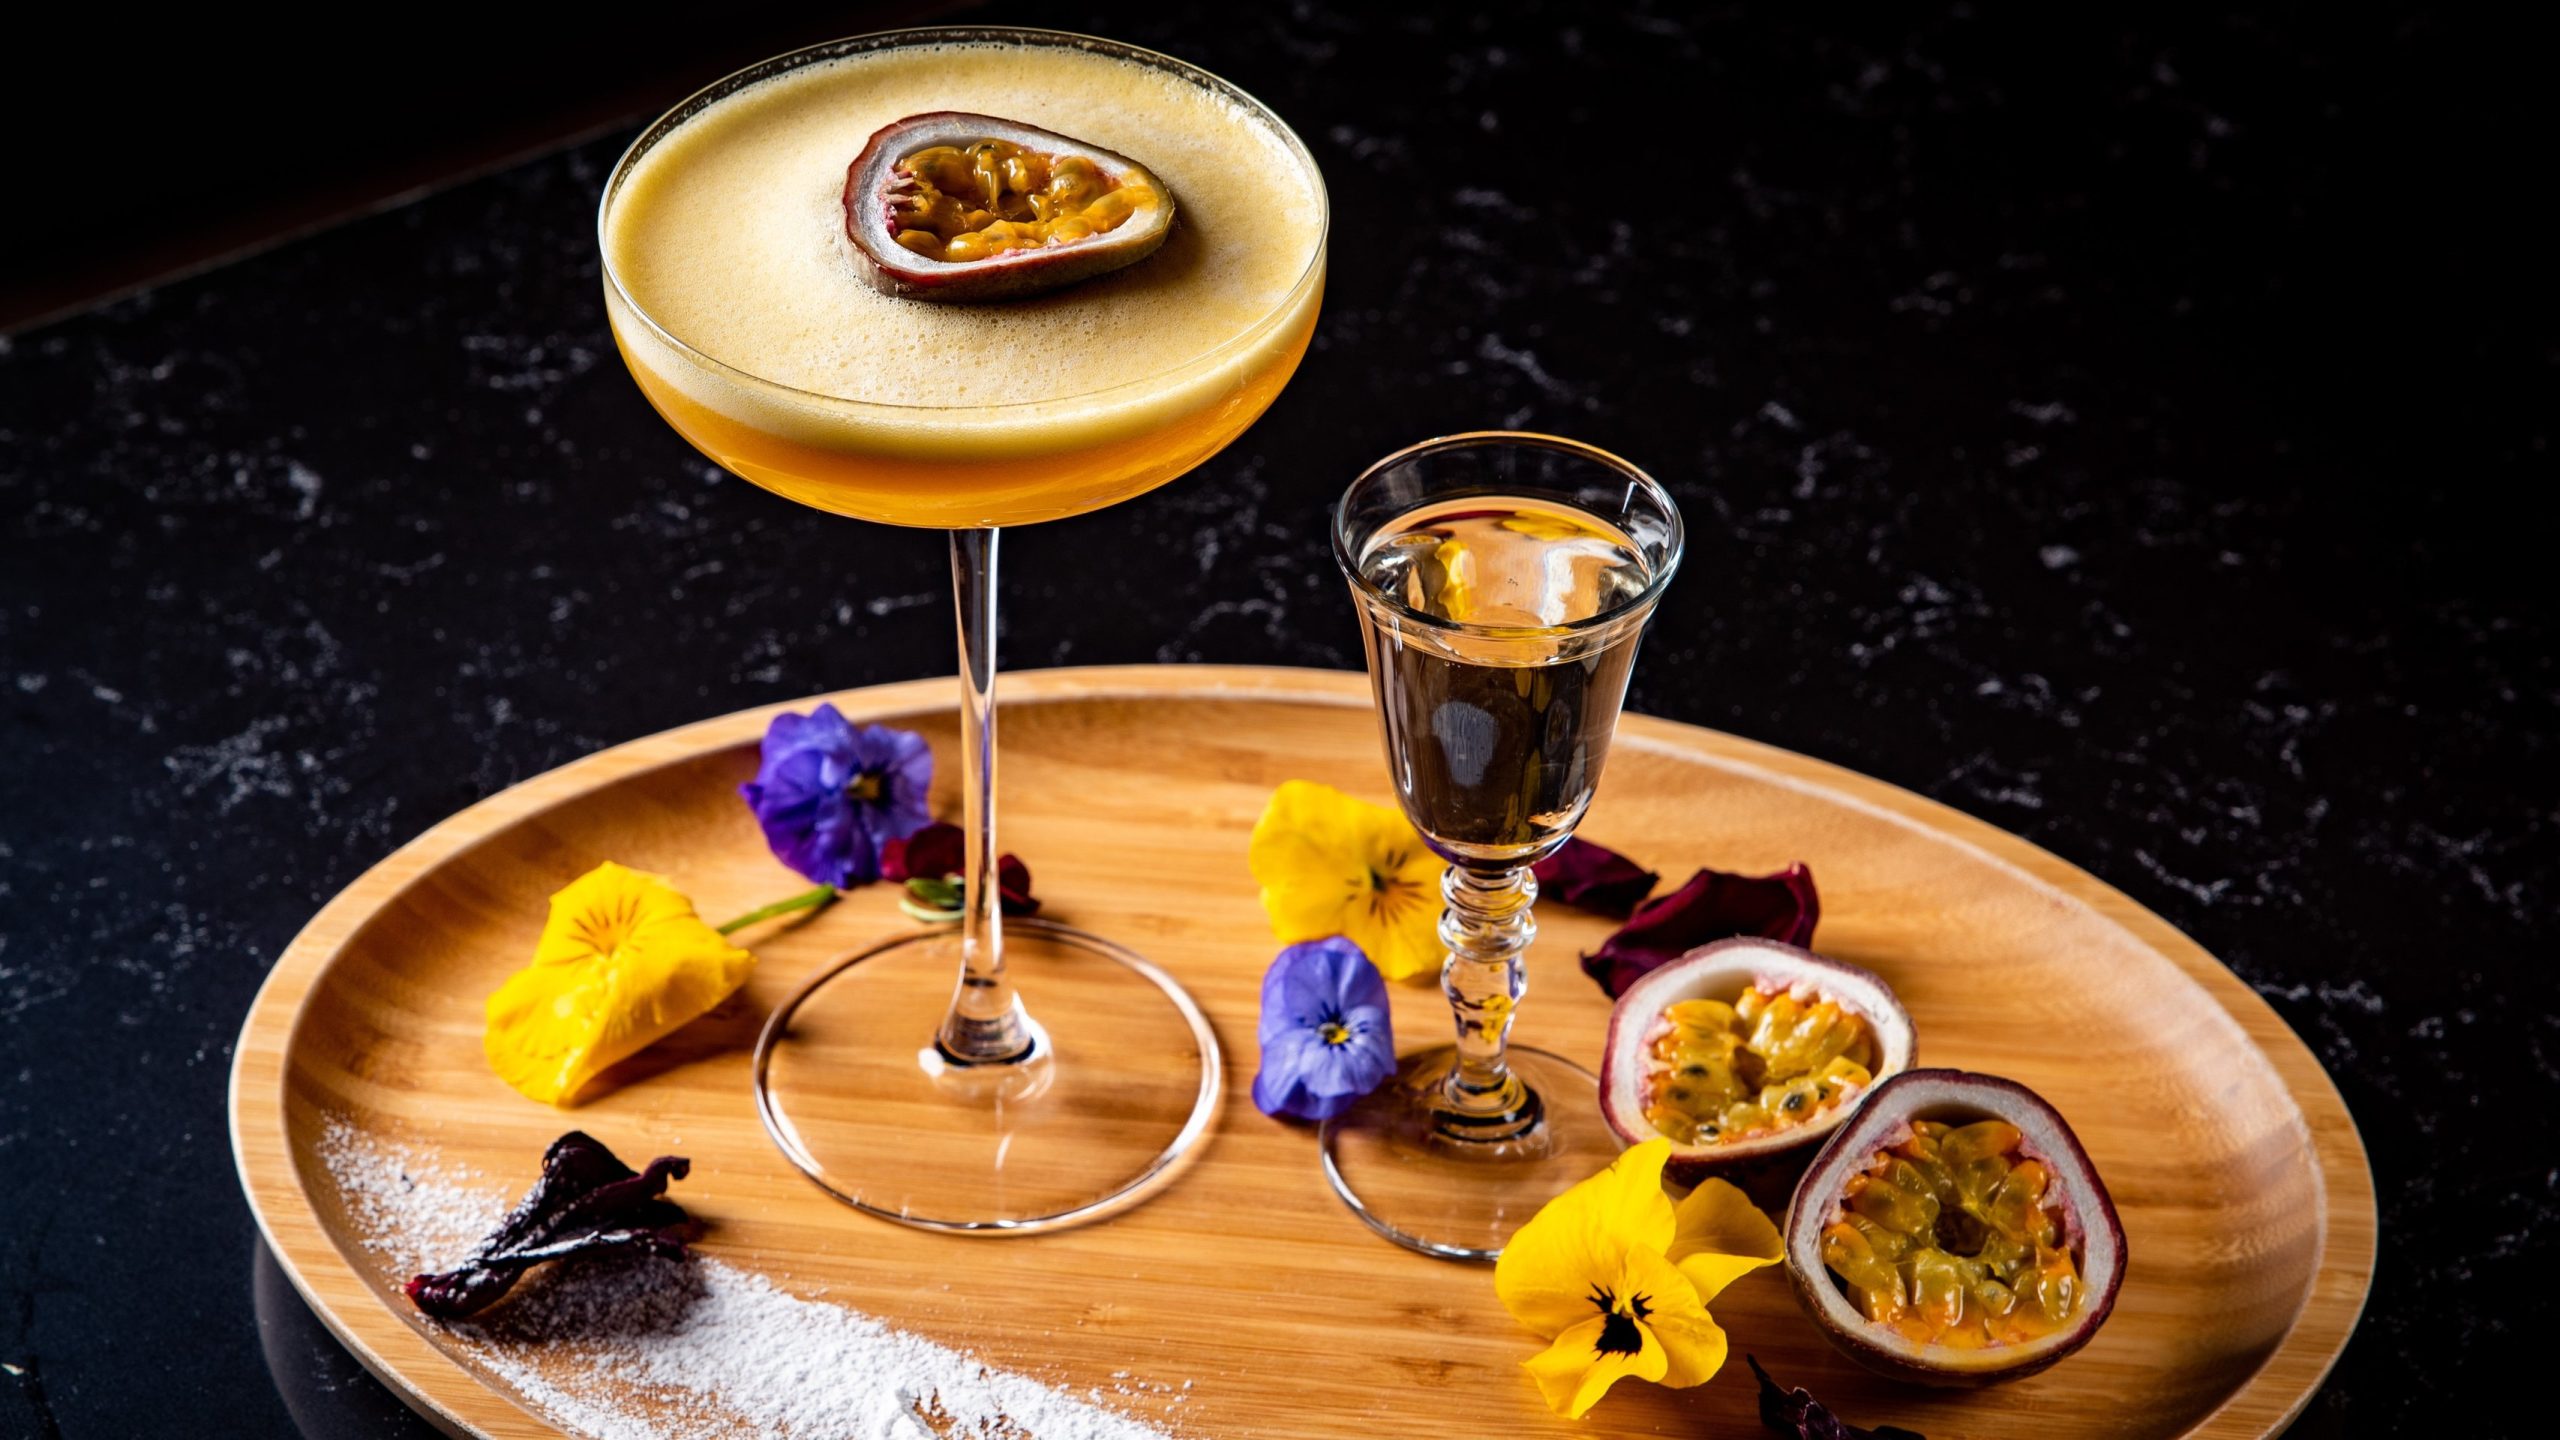 Ein Glas mit dem Pornstar Martini und einem Shotglas mit Champagner auf einem hellen Holzbrett mit violetten und gelben Blüten. Alles auf einem dunklen Tisch.